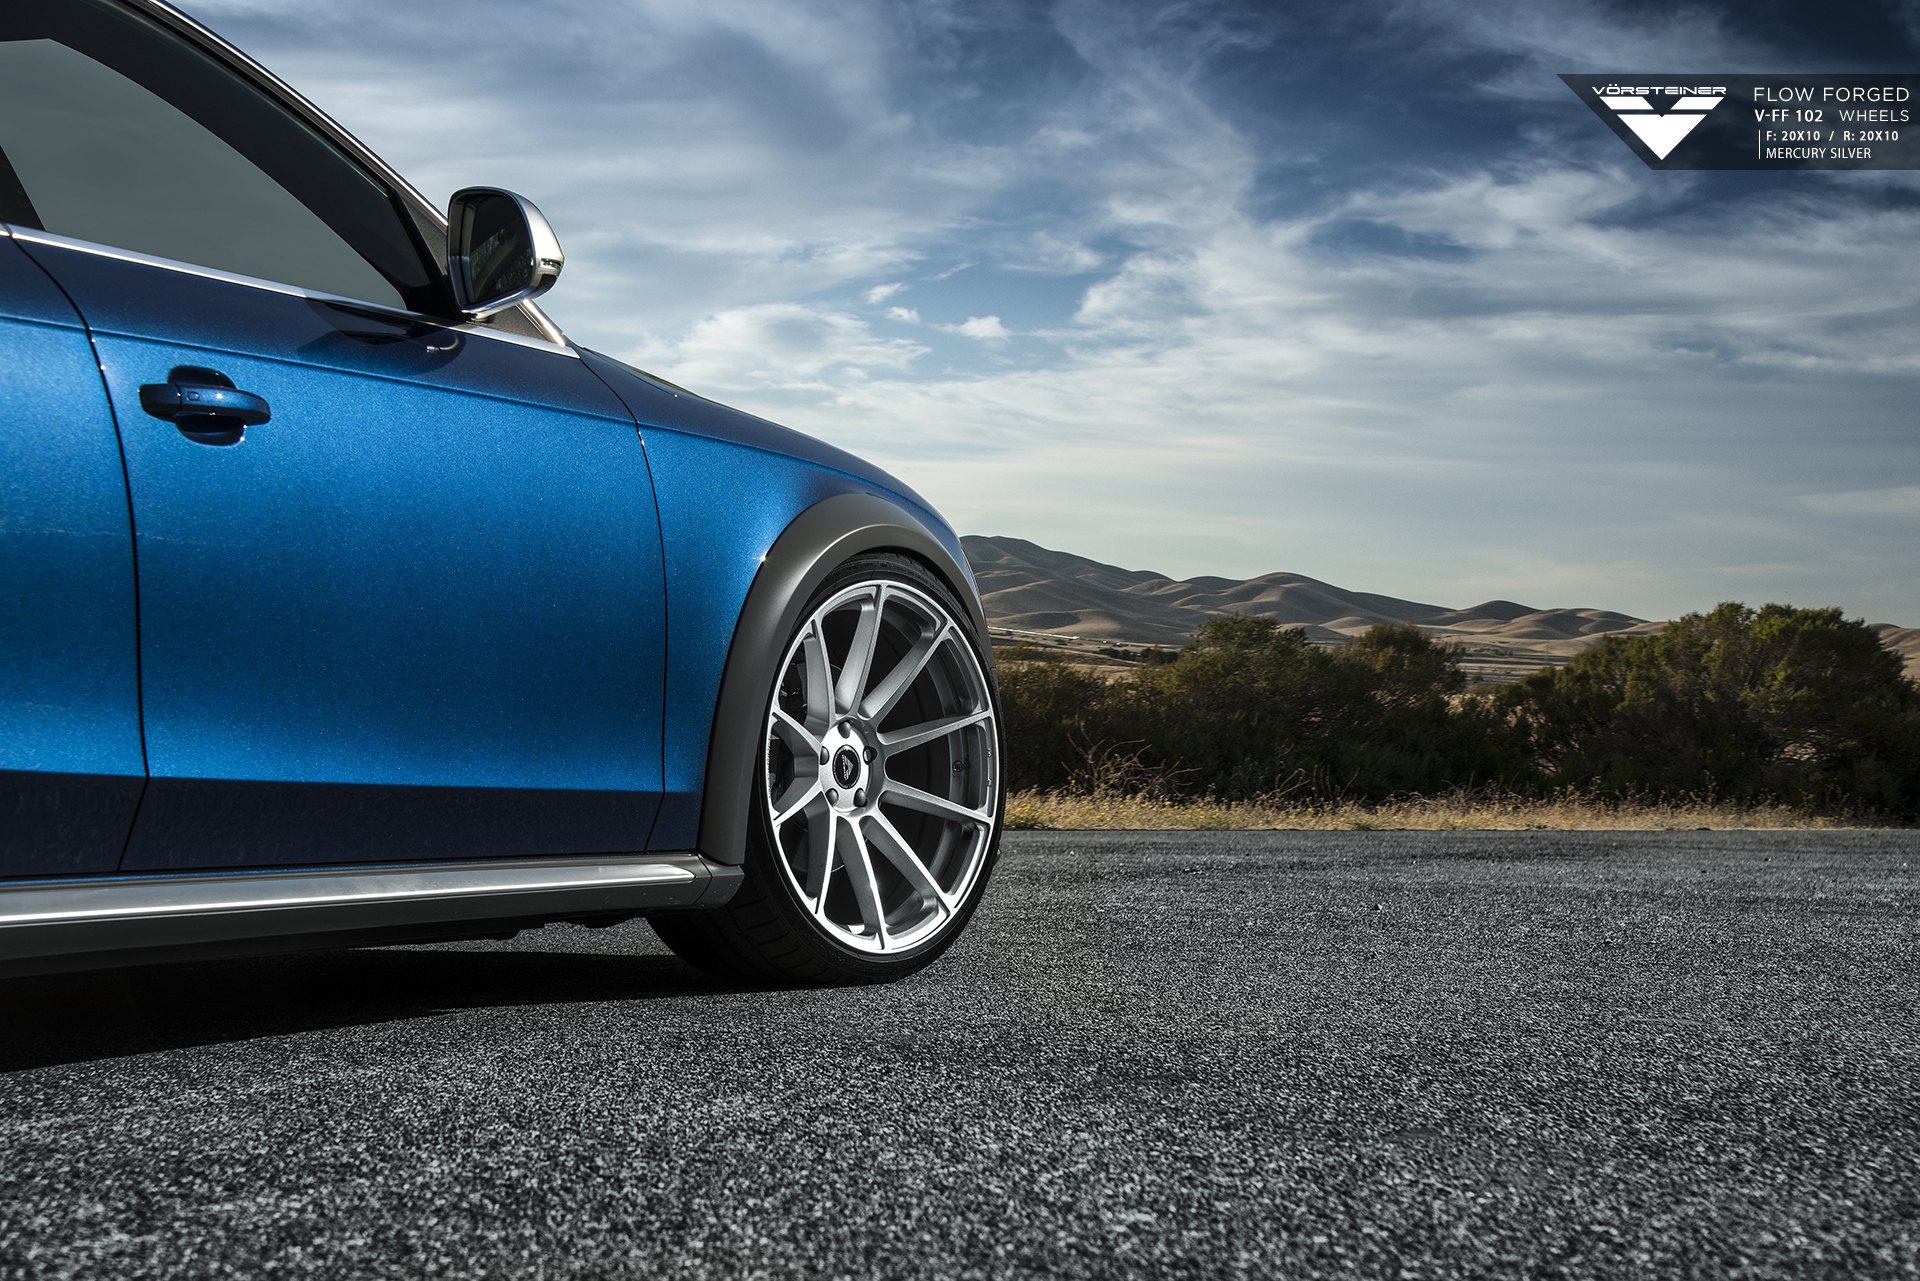 Blue Audi A4 with Forged Silver Vorsteiner Wheels - Photo by Vorstiner